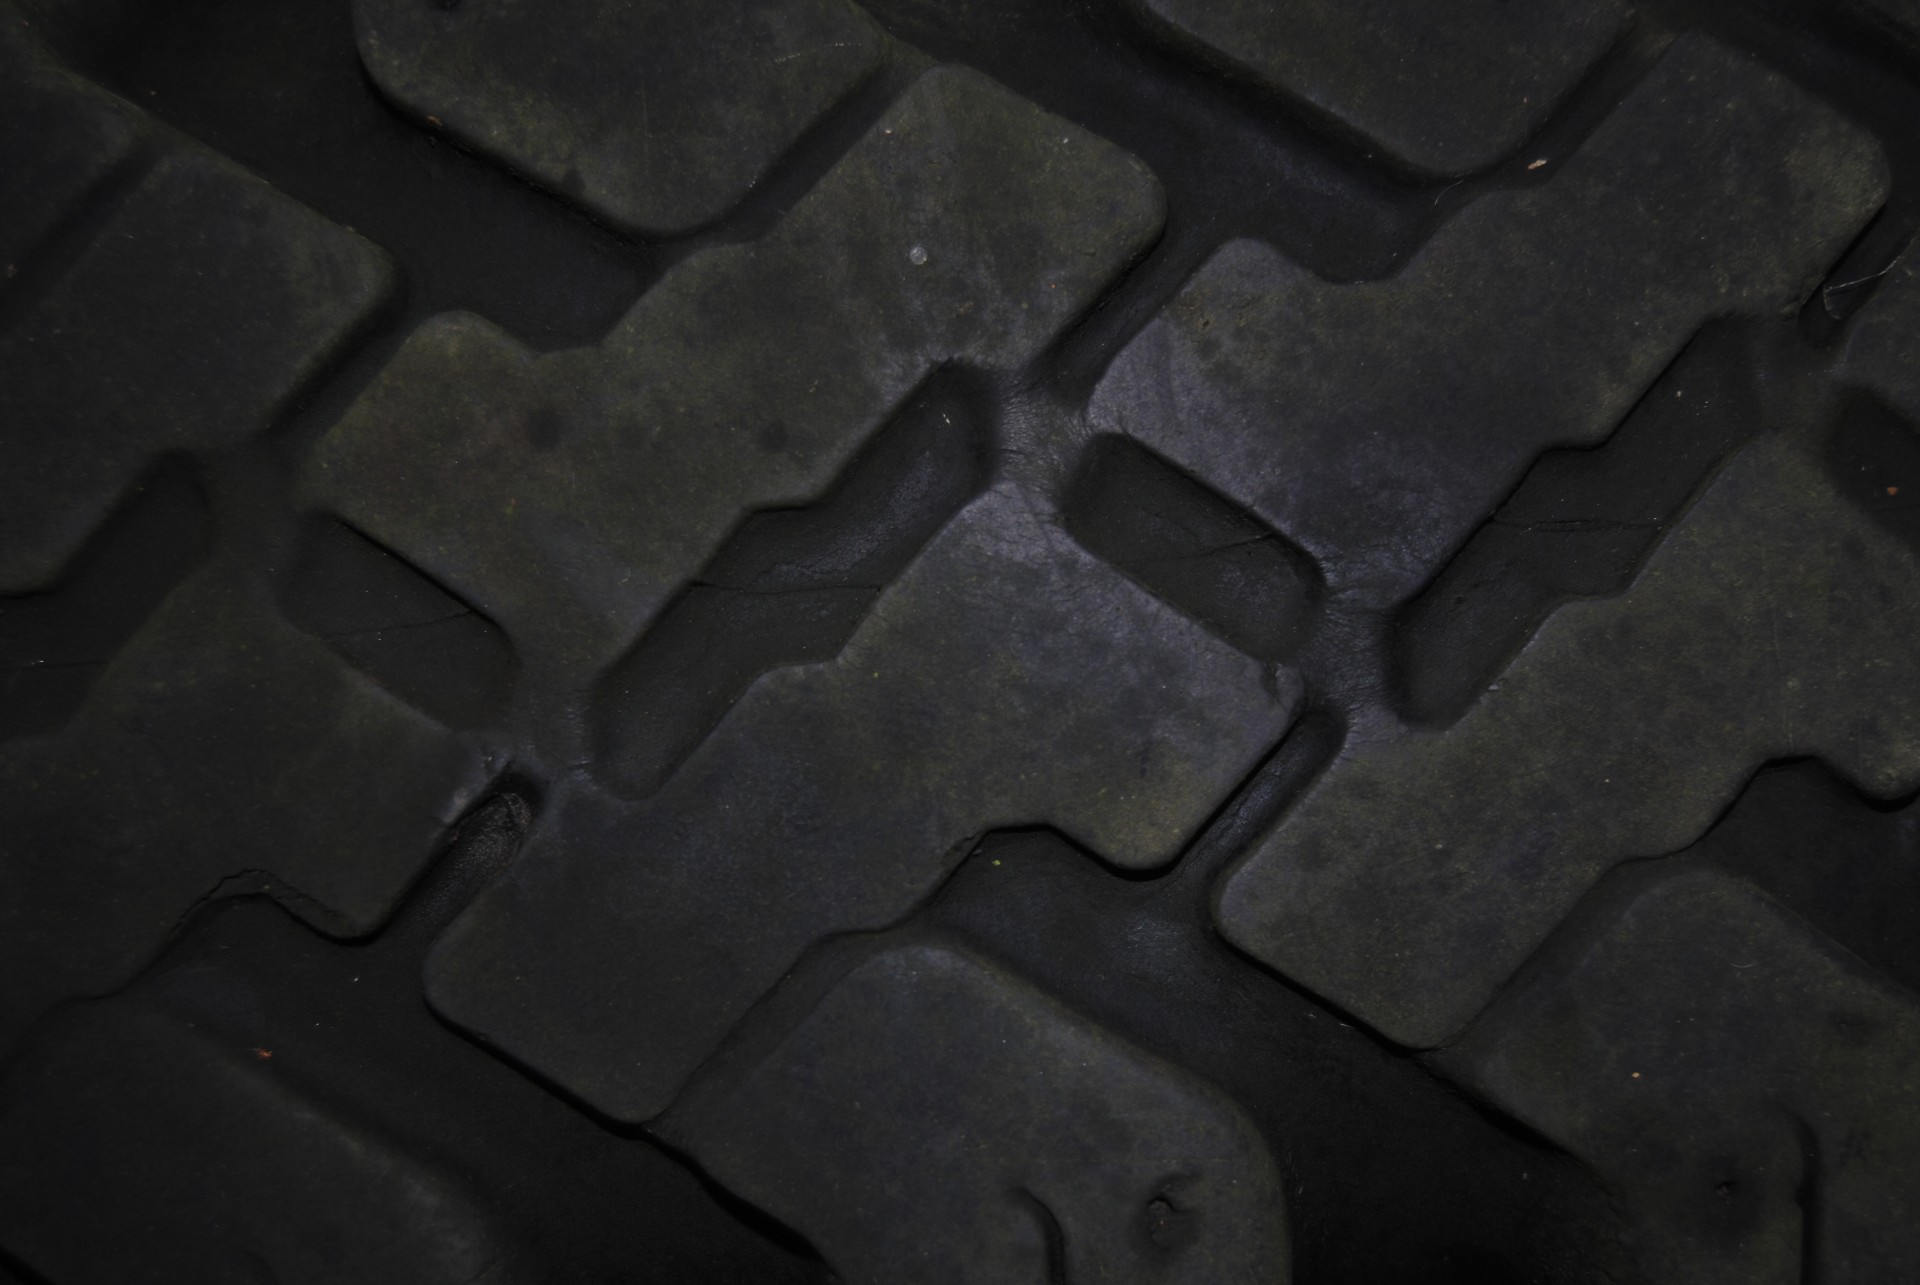 Discussion des pneus